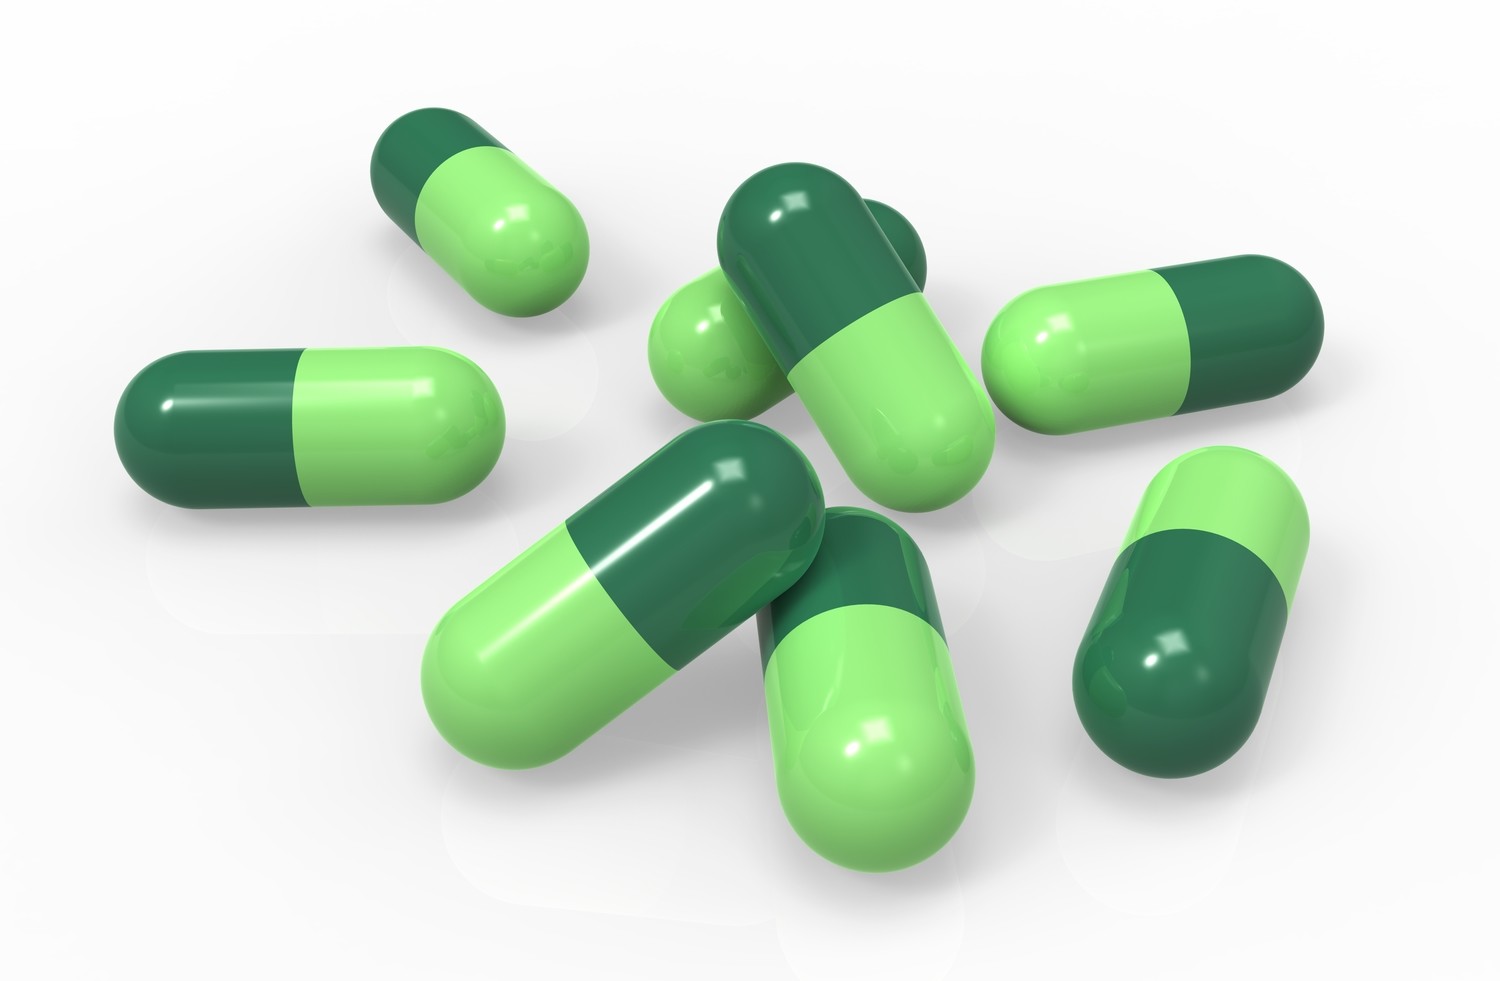 Farmacovigilancia: regulación, responsabilidades y toma de decisiones